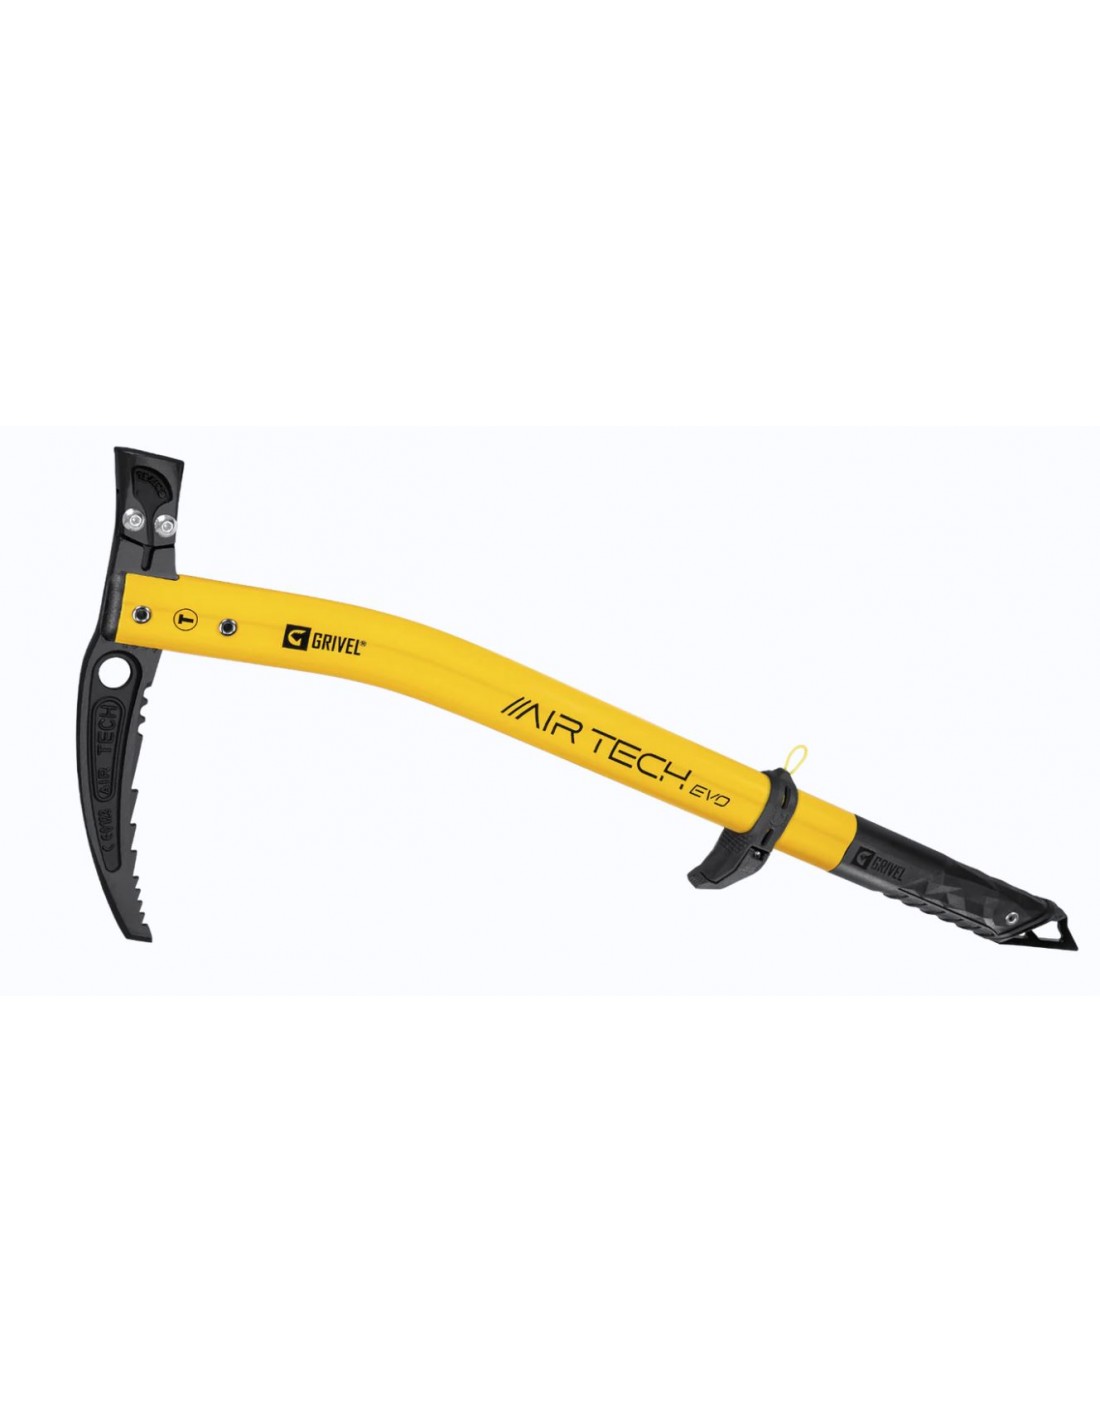 Grivel Eispickel Air Tech Evo Hammer, mit G-Slider, gelb/schwarz, geschmiedeter Stahl, äußerst robust, 53 cm Länge Eisgerätart - Eispickel, Eisgerätvariante - Hammer, Eisgerätgewicht - 601 - 650 g, Eisgerätlänge - 53 cm, von Grivel